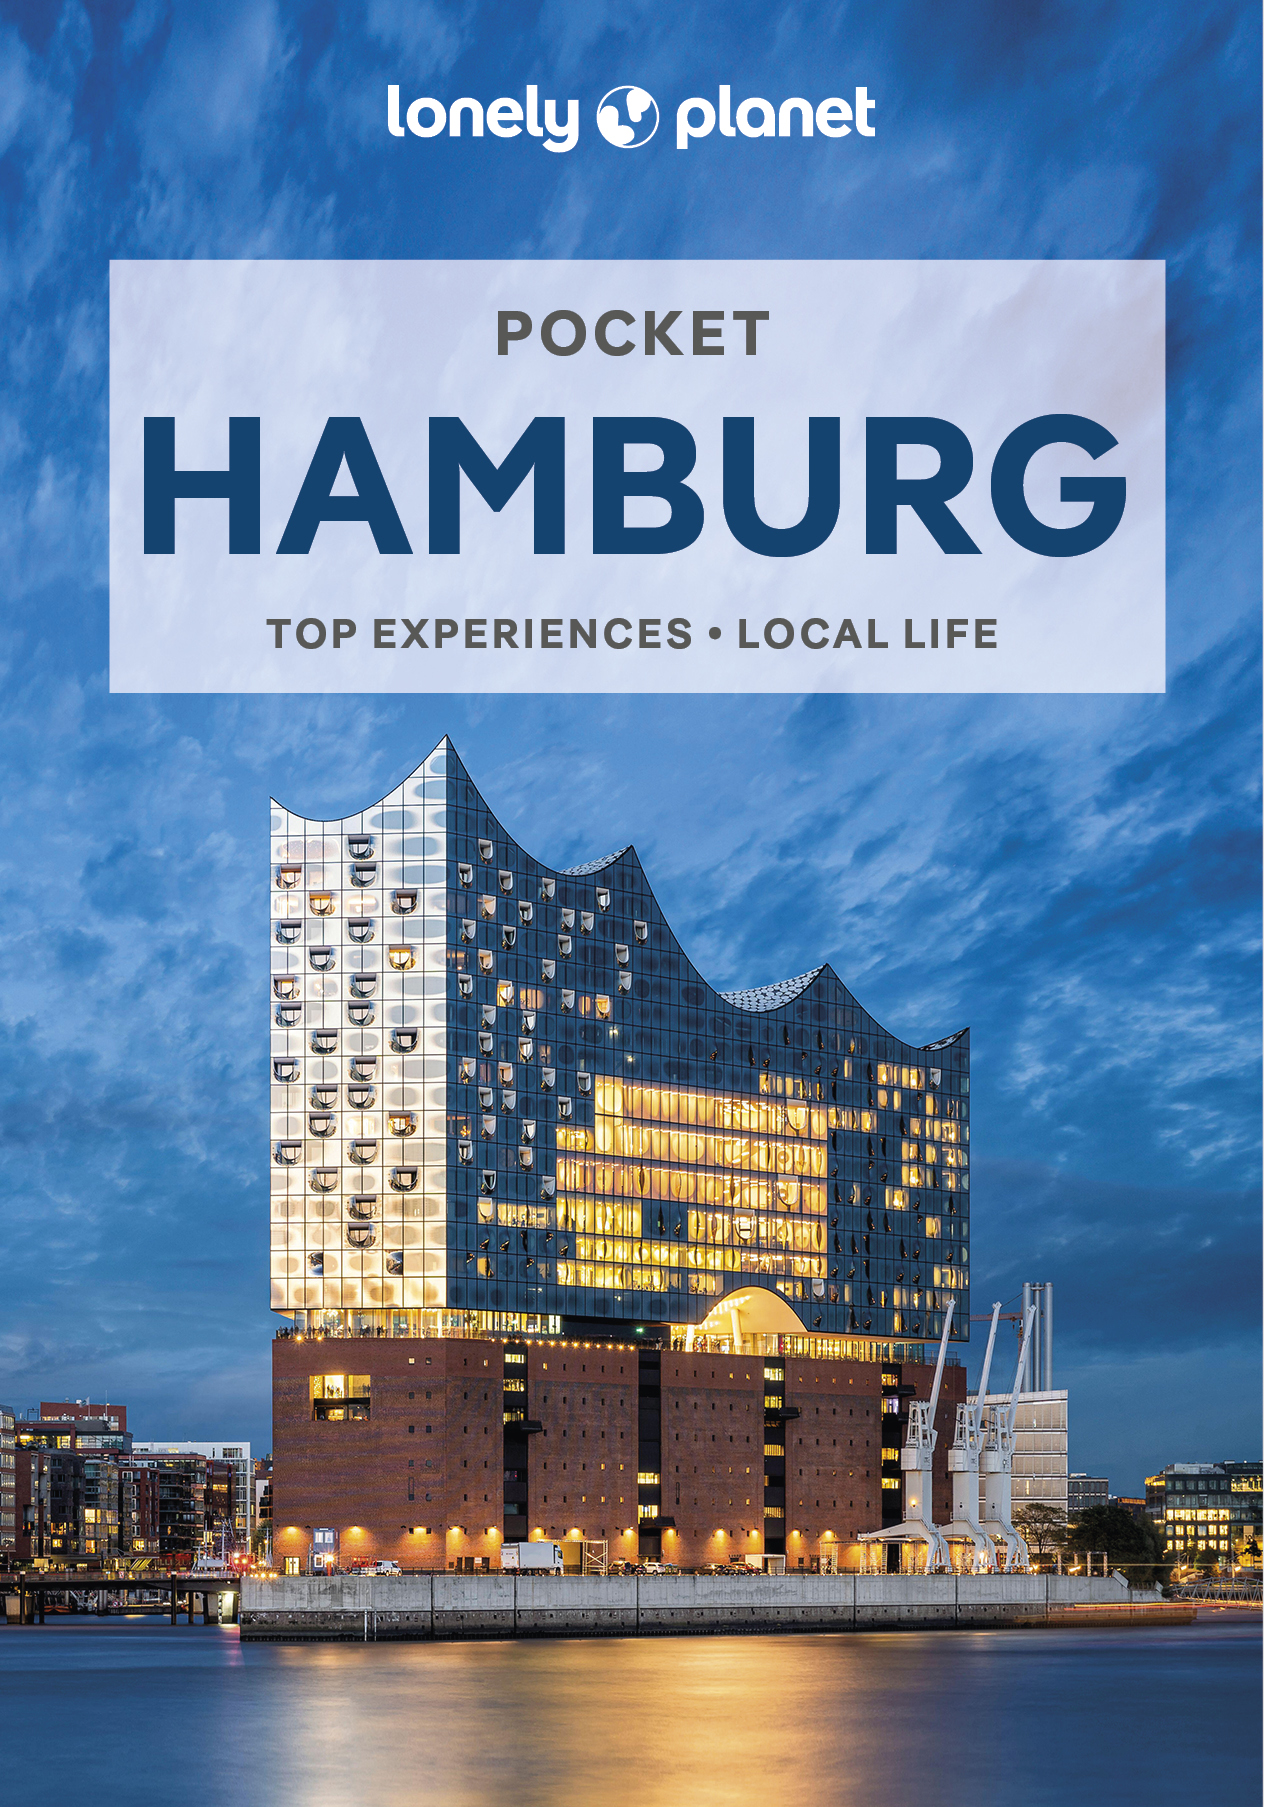 průvodce Hamburg 2.edice anglicky pocket Lonely Planet